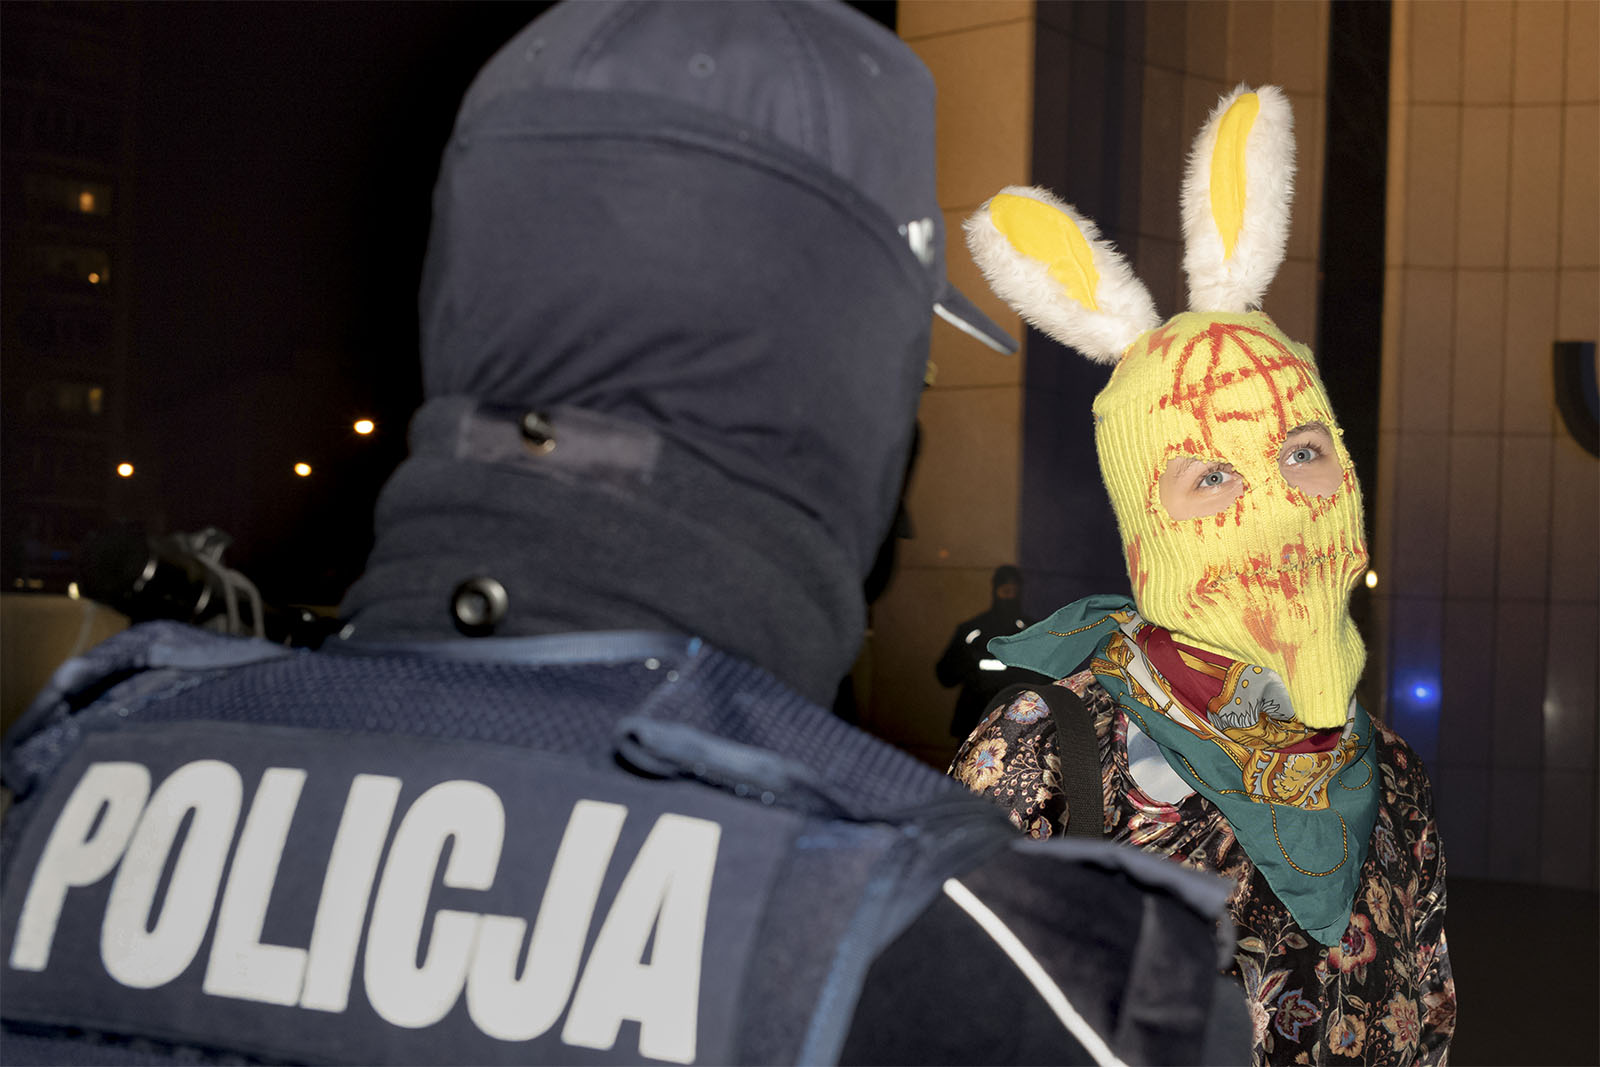 מפגינה ושוטר באחת ההפגנות נגד החוק הפולני האוסר על ביצוע הפלות, וארשה. "המהפכה החברתית כבר מתרחשת" (צילום: AP Photo/Agata Grzybowska)